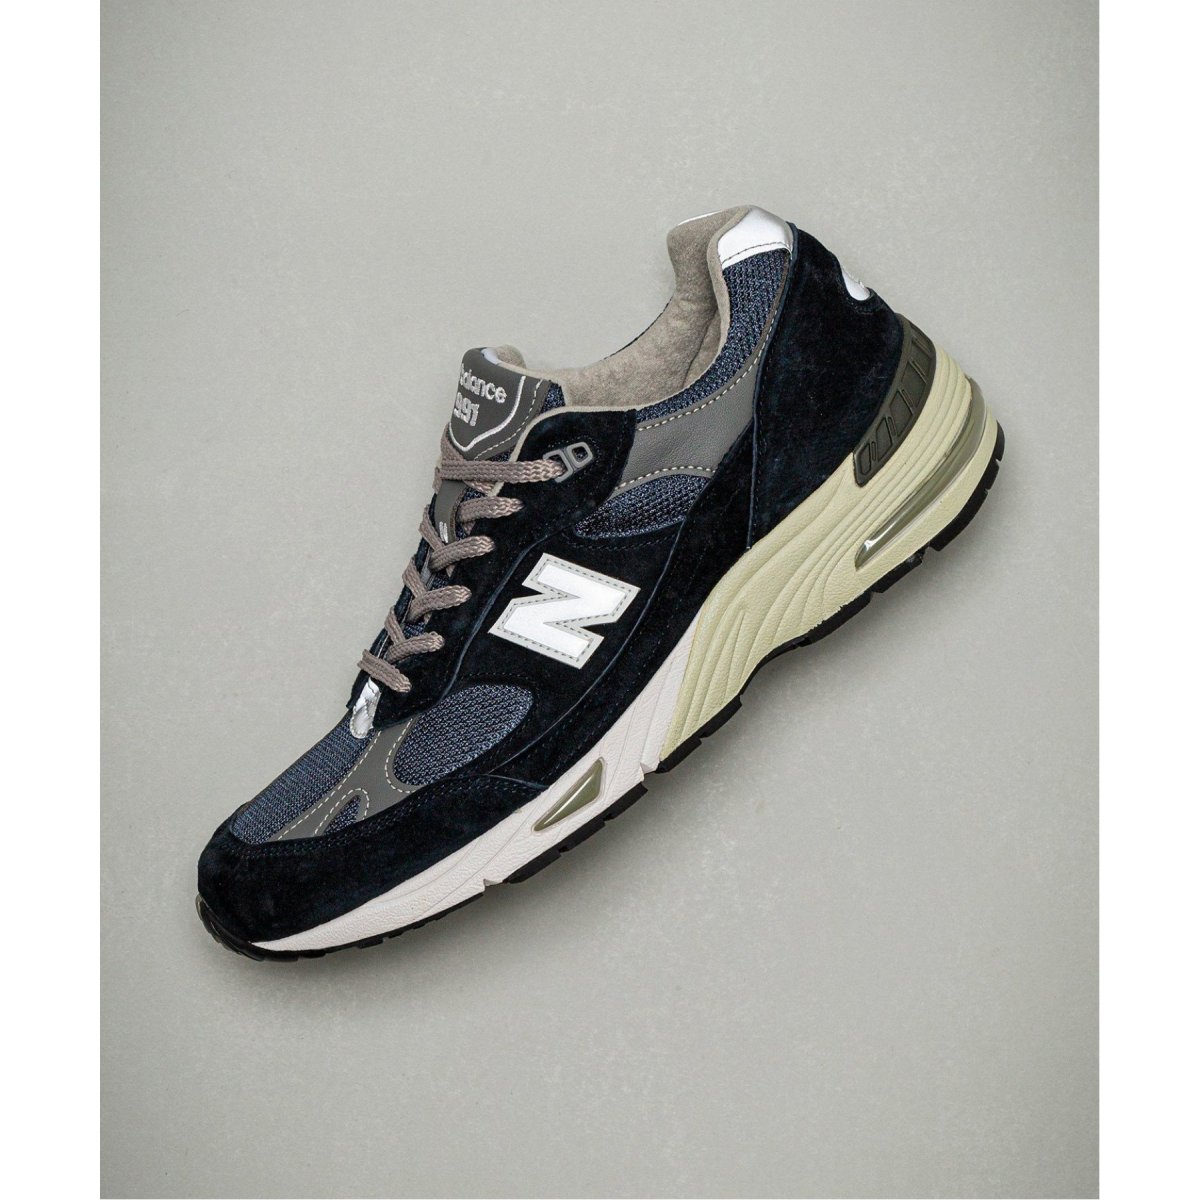 業販New Balance M991 NV ニューバランス M991NV 28cm 靴